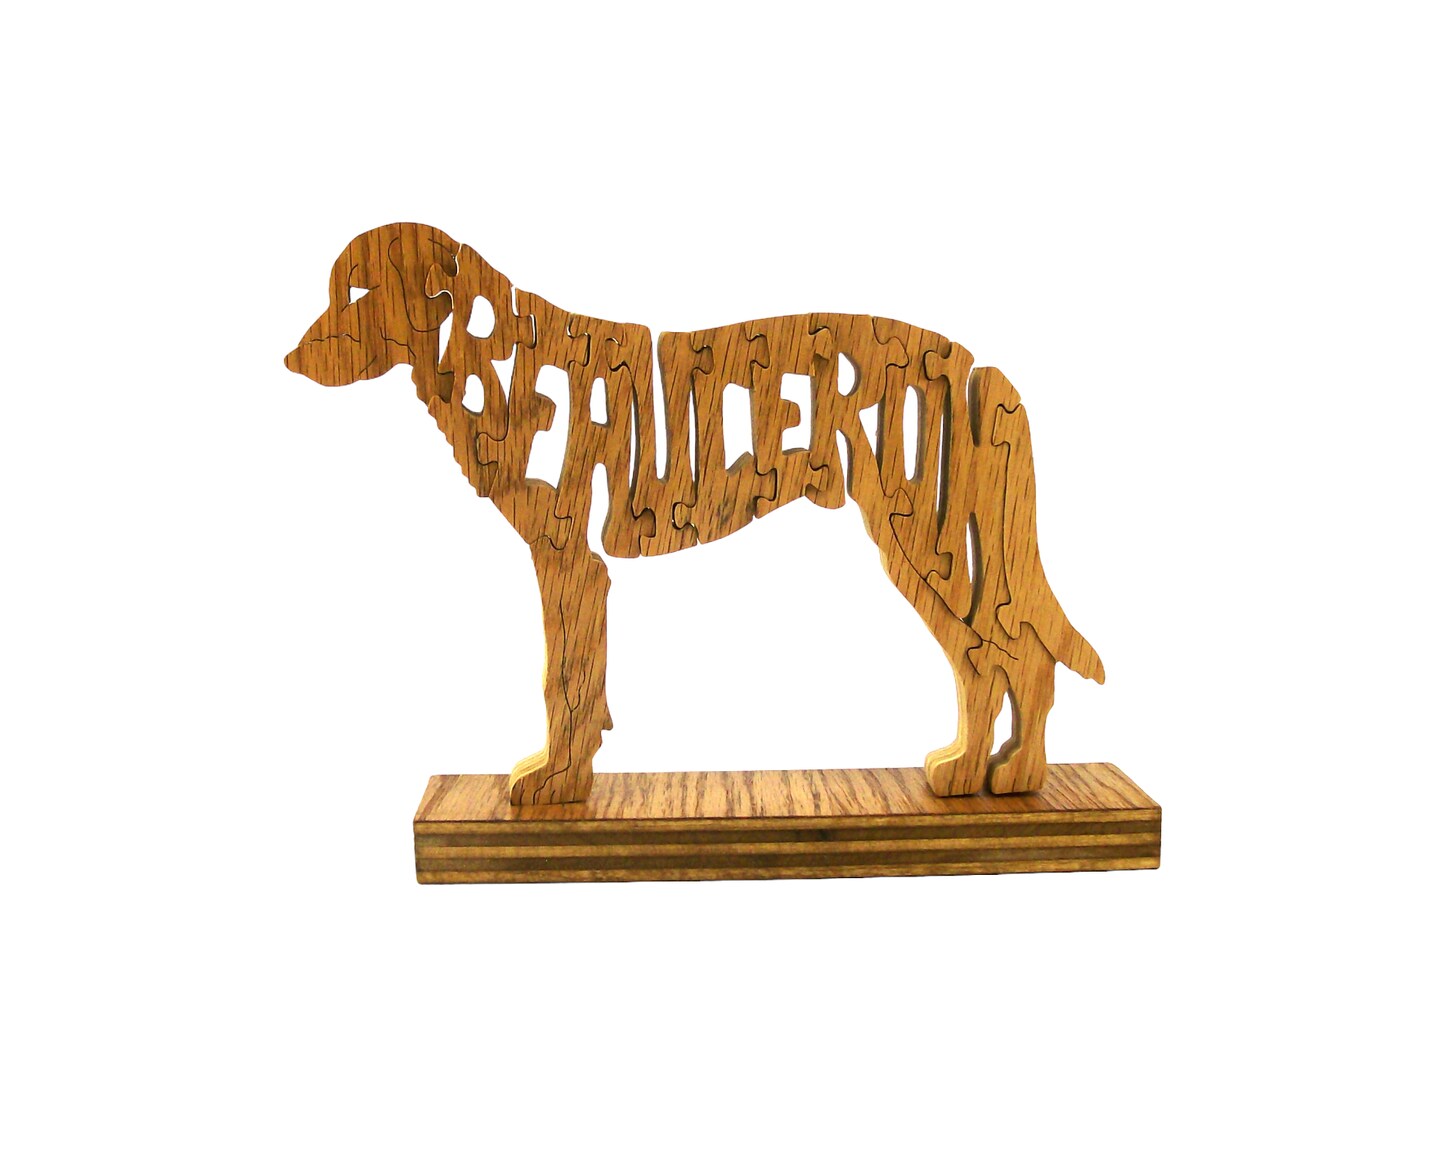 Beauceron Dog puzzle, wooden dog puzzle, dog puzzle, wooden animal puzzle,  animal puzzle, games and puzzles, puzzles, animal shaped puzzle